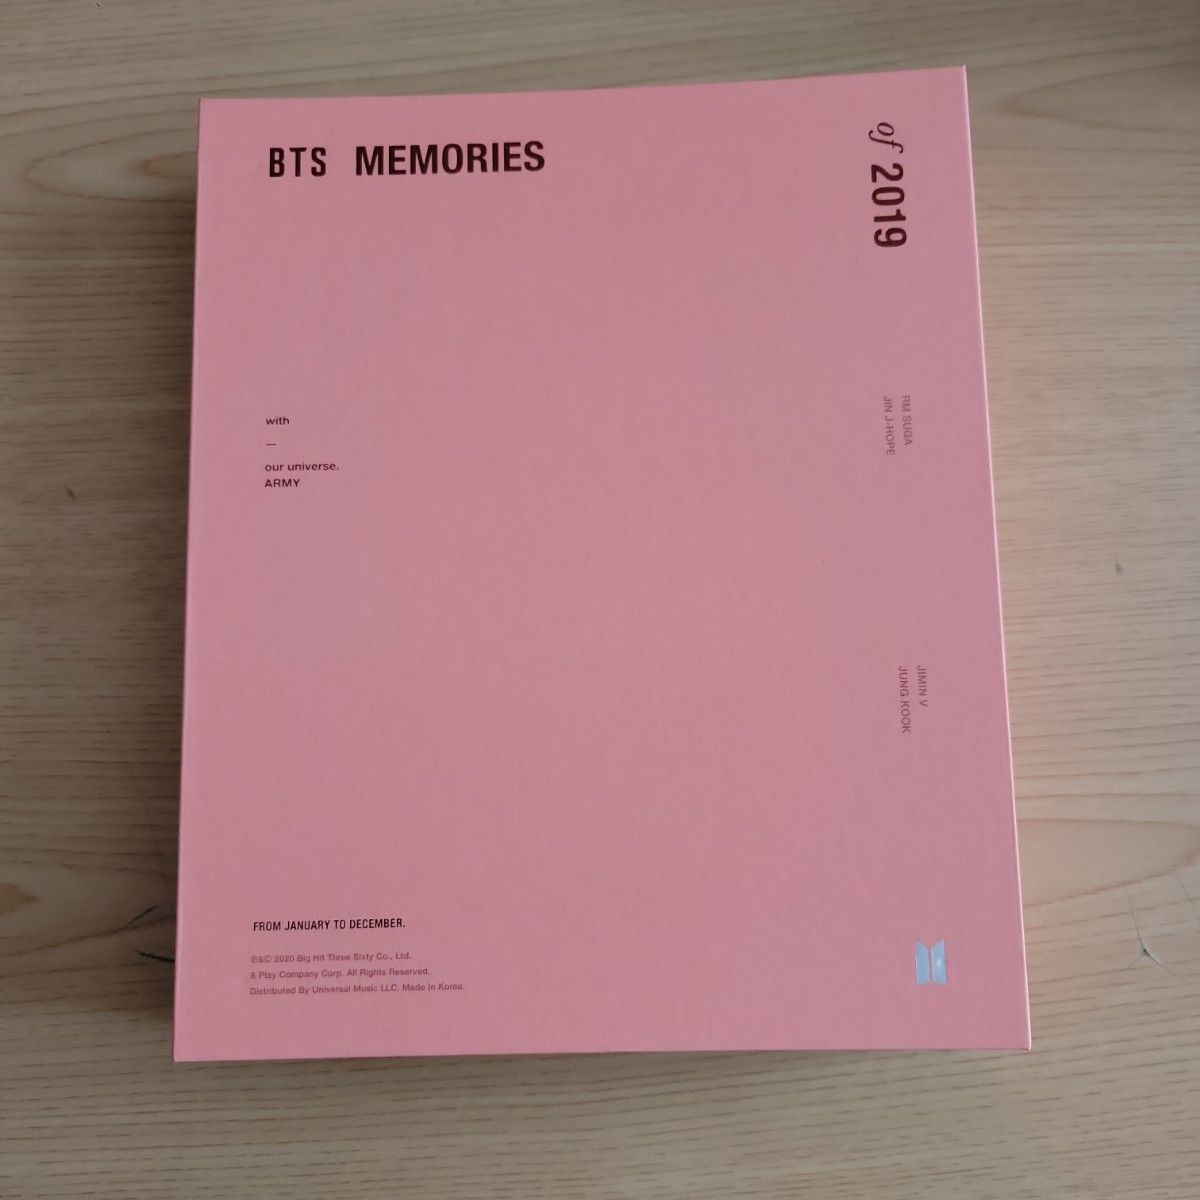 BTS MEMORIES DVD　2019